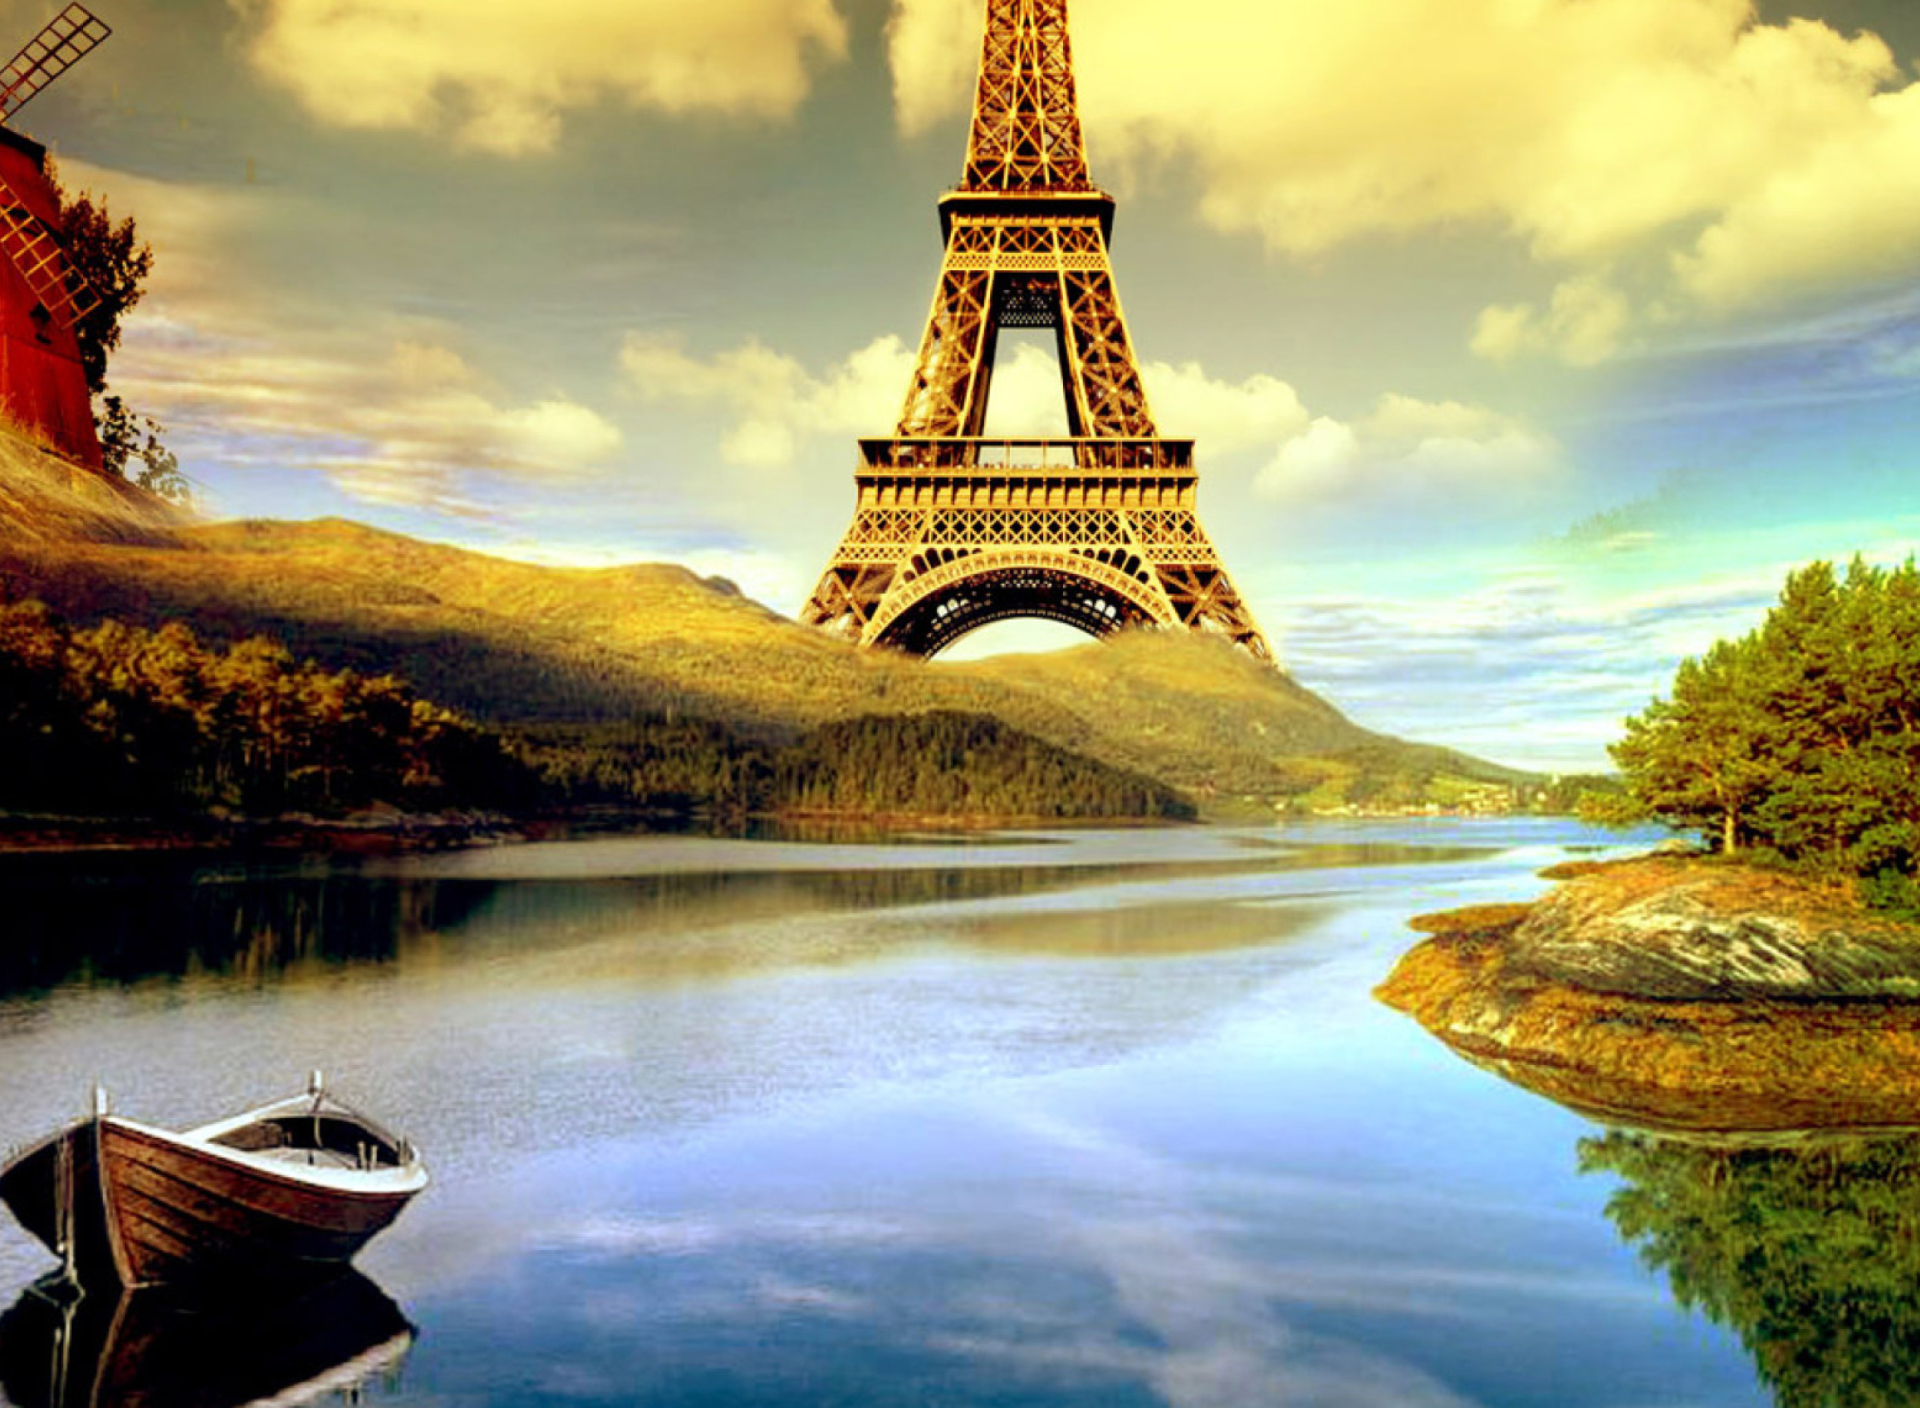 Das Eiffel Tower Photo Manipulation Wallpaper 1920x1408